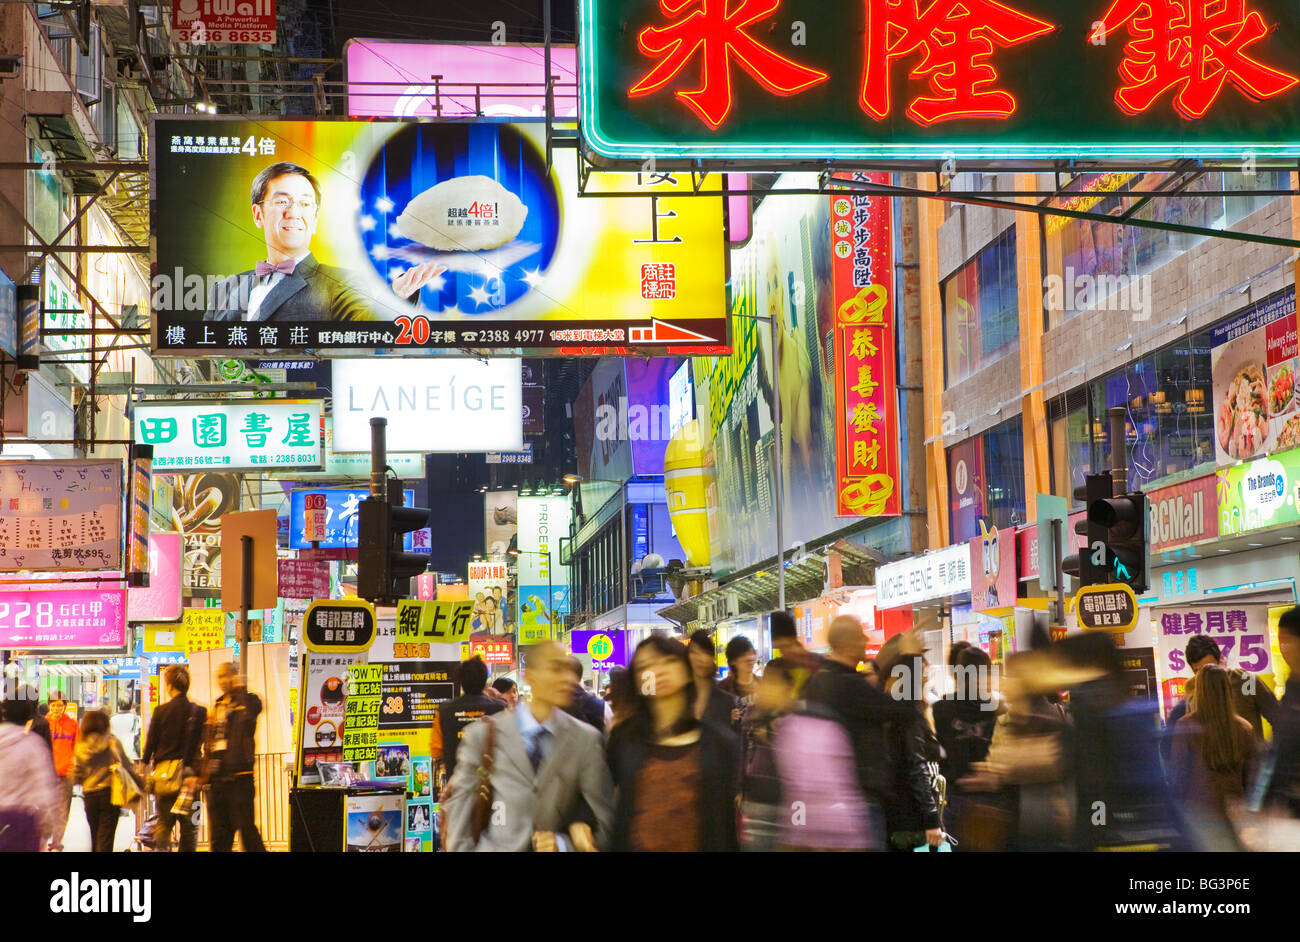 China, Hong Kong, Kowloon. Stock Photo